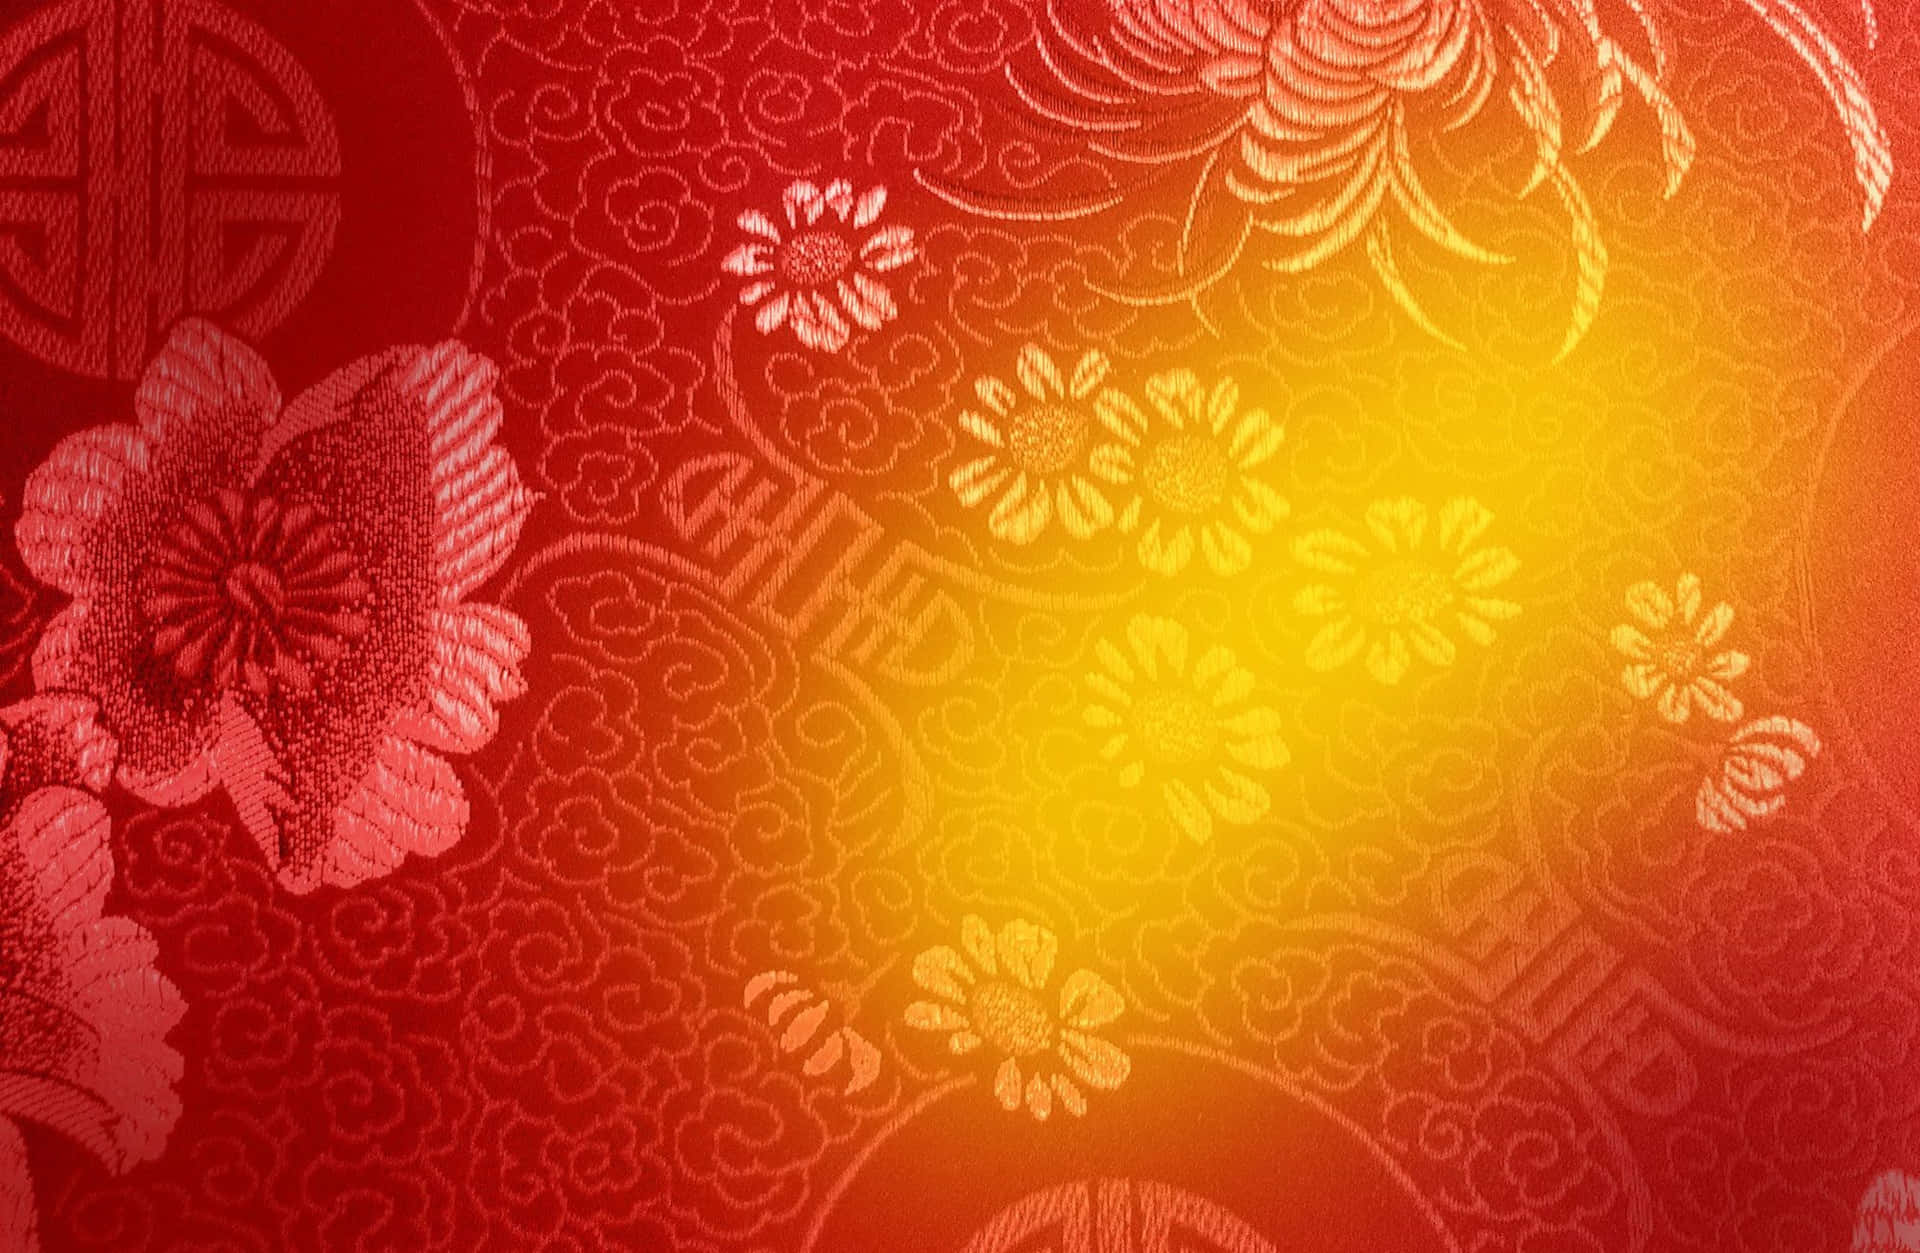 Etsymbol På Glæde Og Velstand - En Festlig Gylden Kinesisk Nytårsbaggrund.